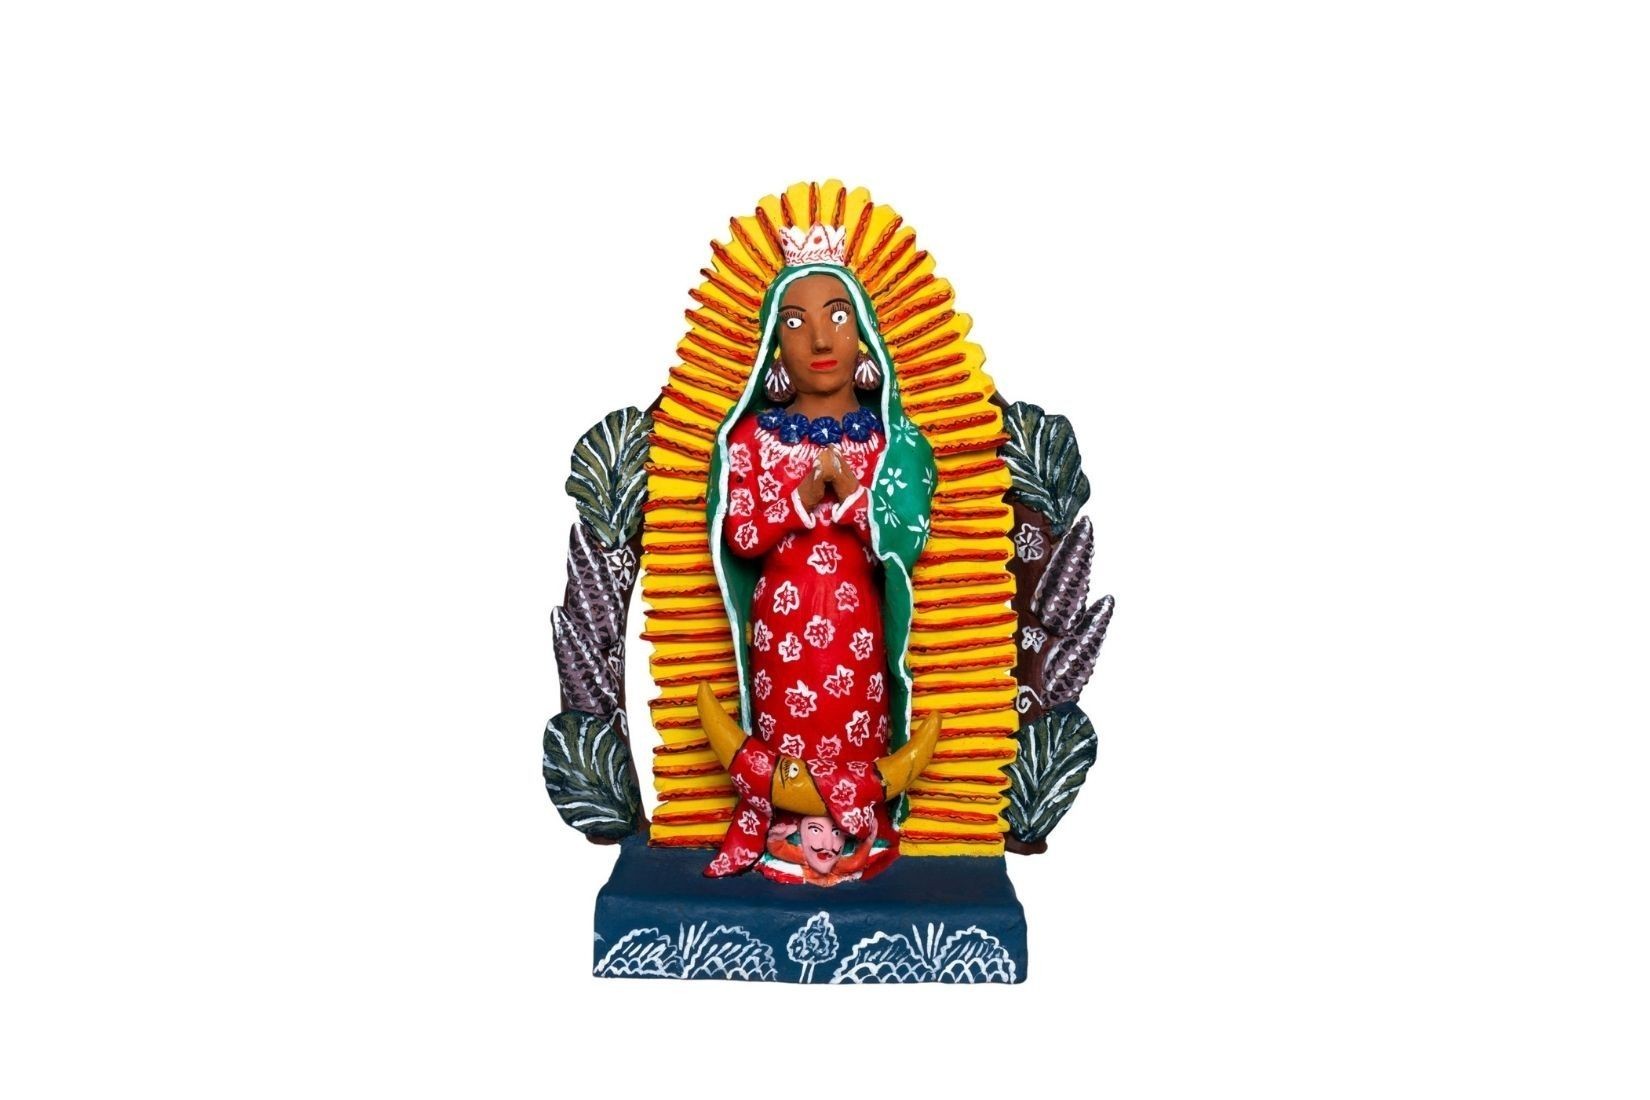 Virgen de Guadalupe en barro modelado y policromado. Artesano desconocido. Ocumicho, Mich. Donante Mercedes Iturbe. Col. AmigosMAP. (Foto: EKV).